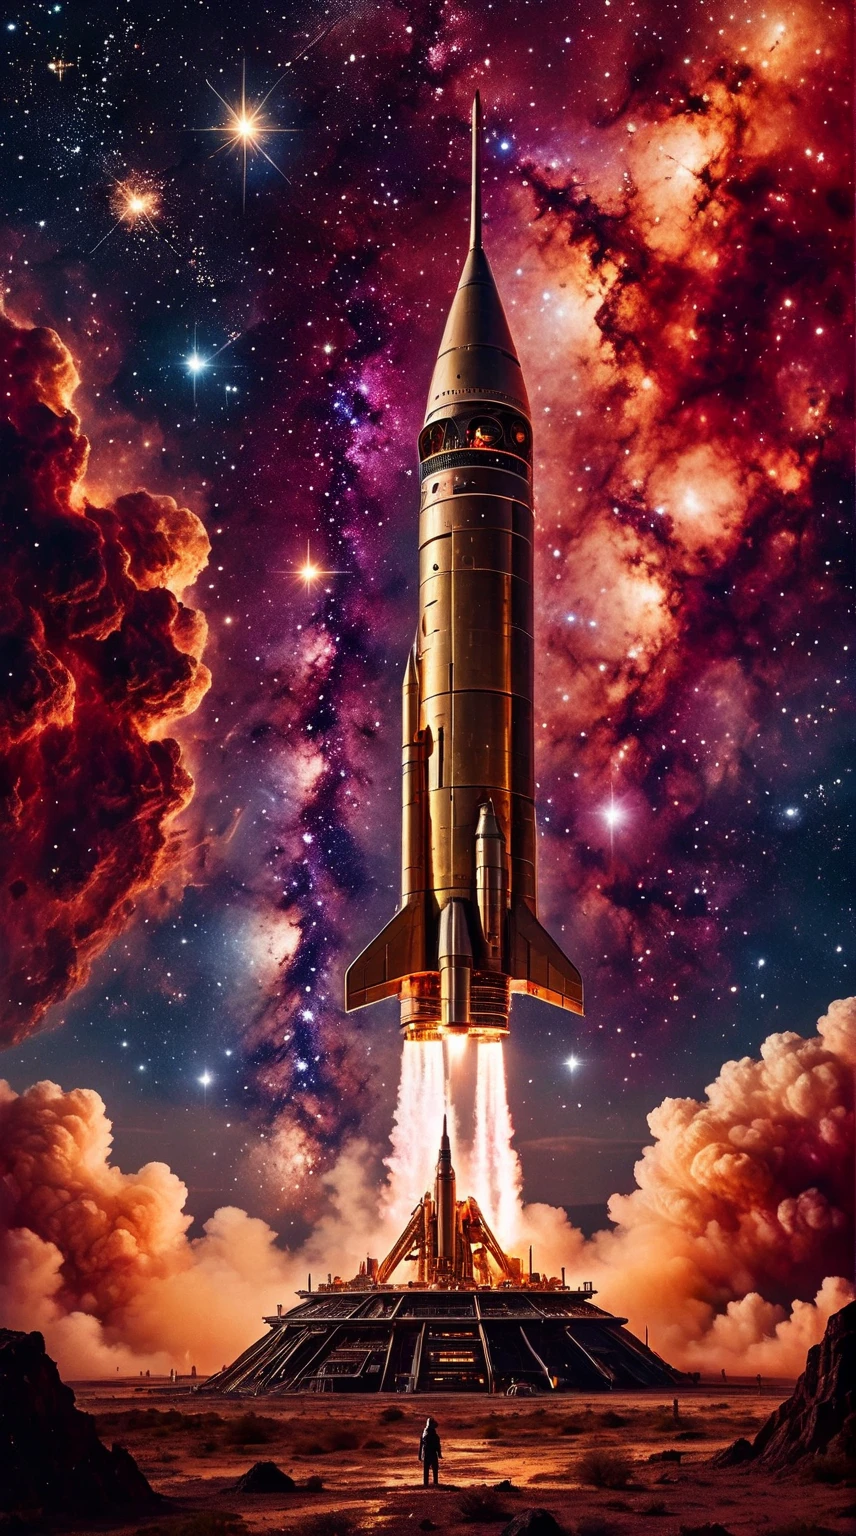 un cohete retrofuturista en tonos latón en medio de una nebulosa estrellada (para un entorno ecléctico de ciencia ficción)